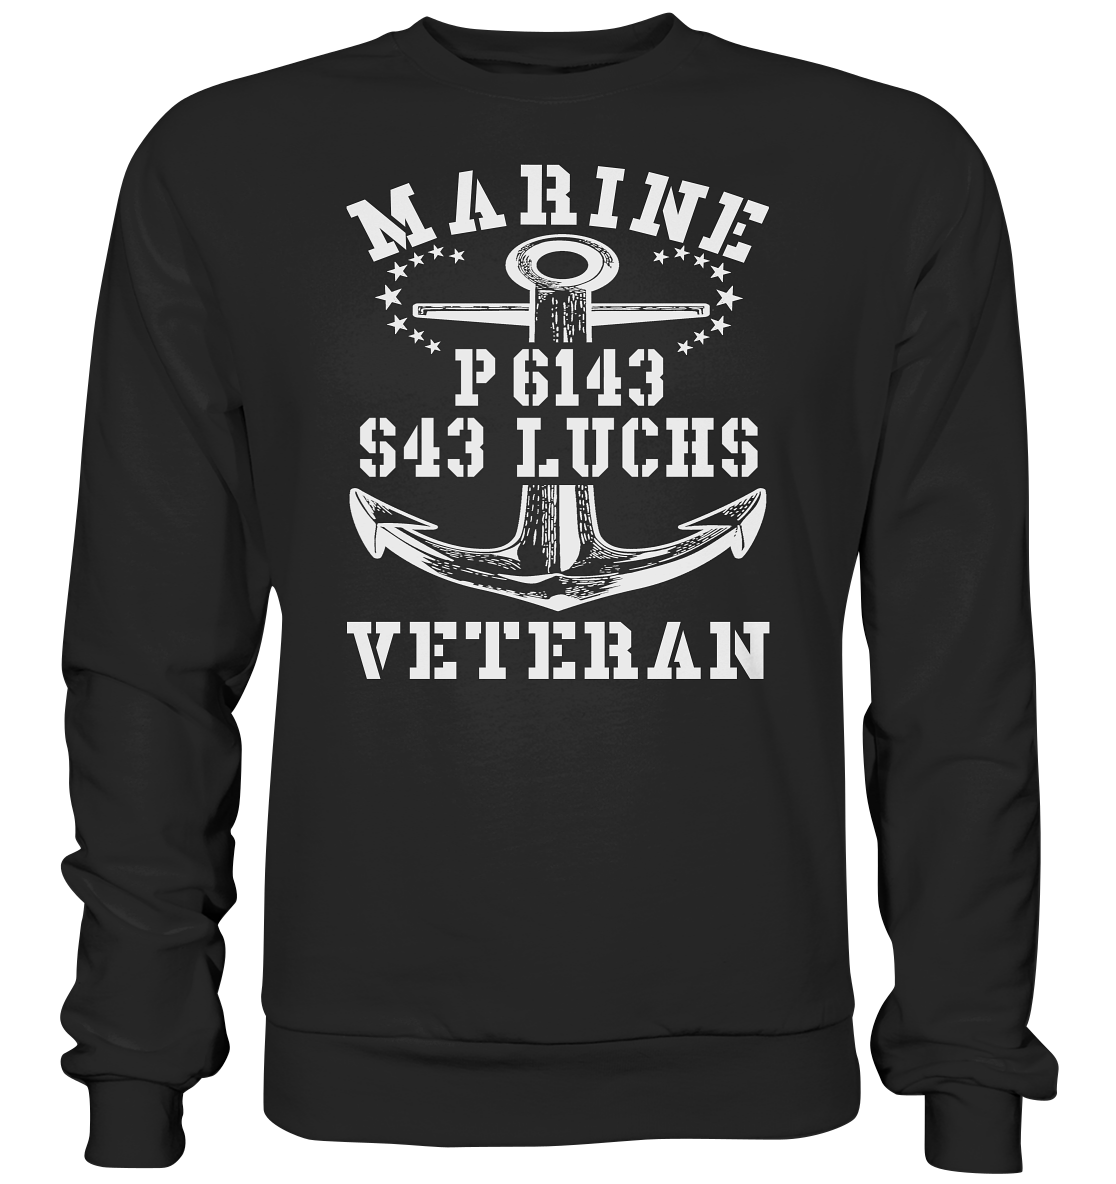 P6143 S43 LUCHS Marine Veteran - Premium Sweatshirt